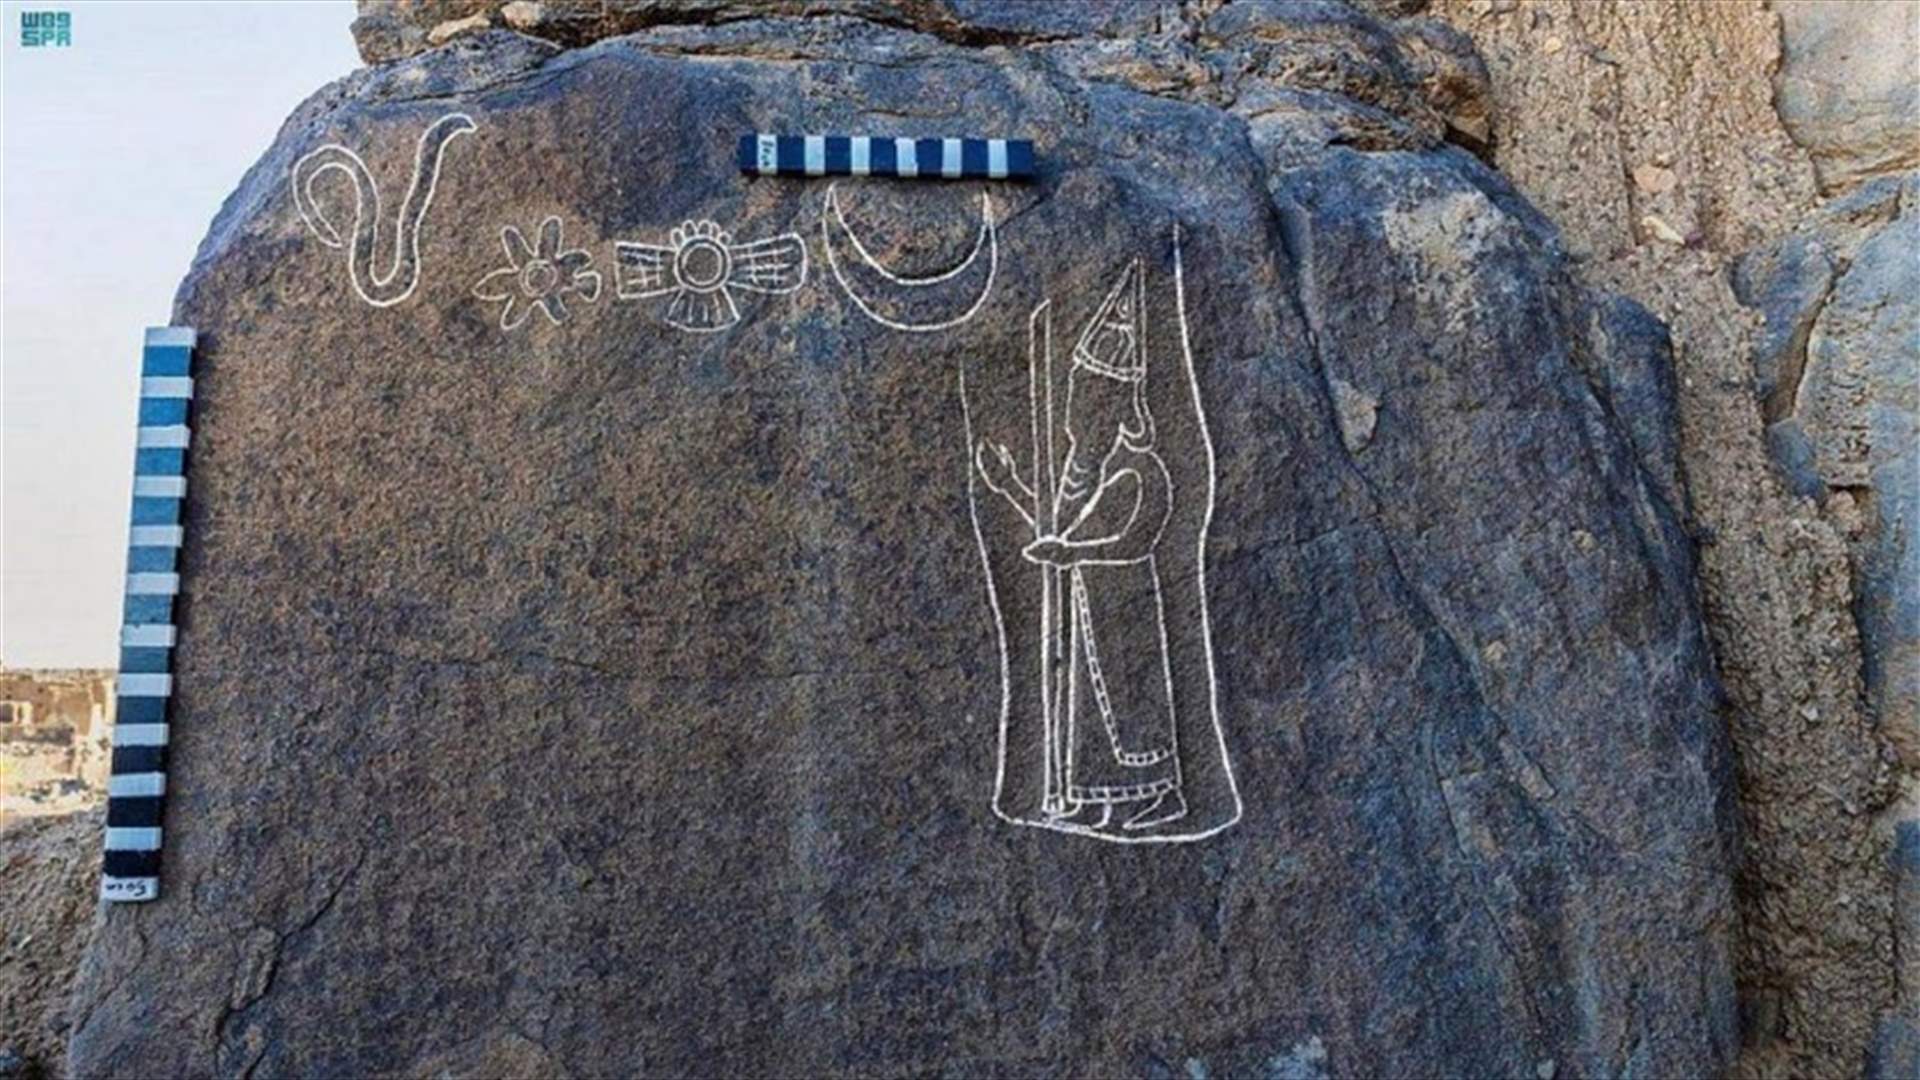 العثور على نقوش صخرية تعود لملك بابلي في القرن السادس قبل الميلاد في السعودية